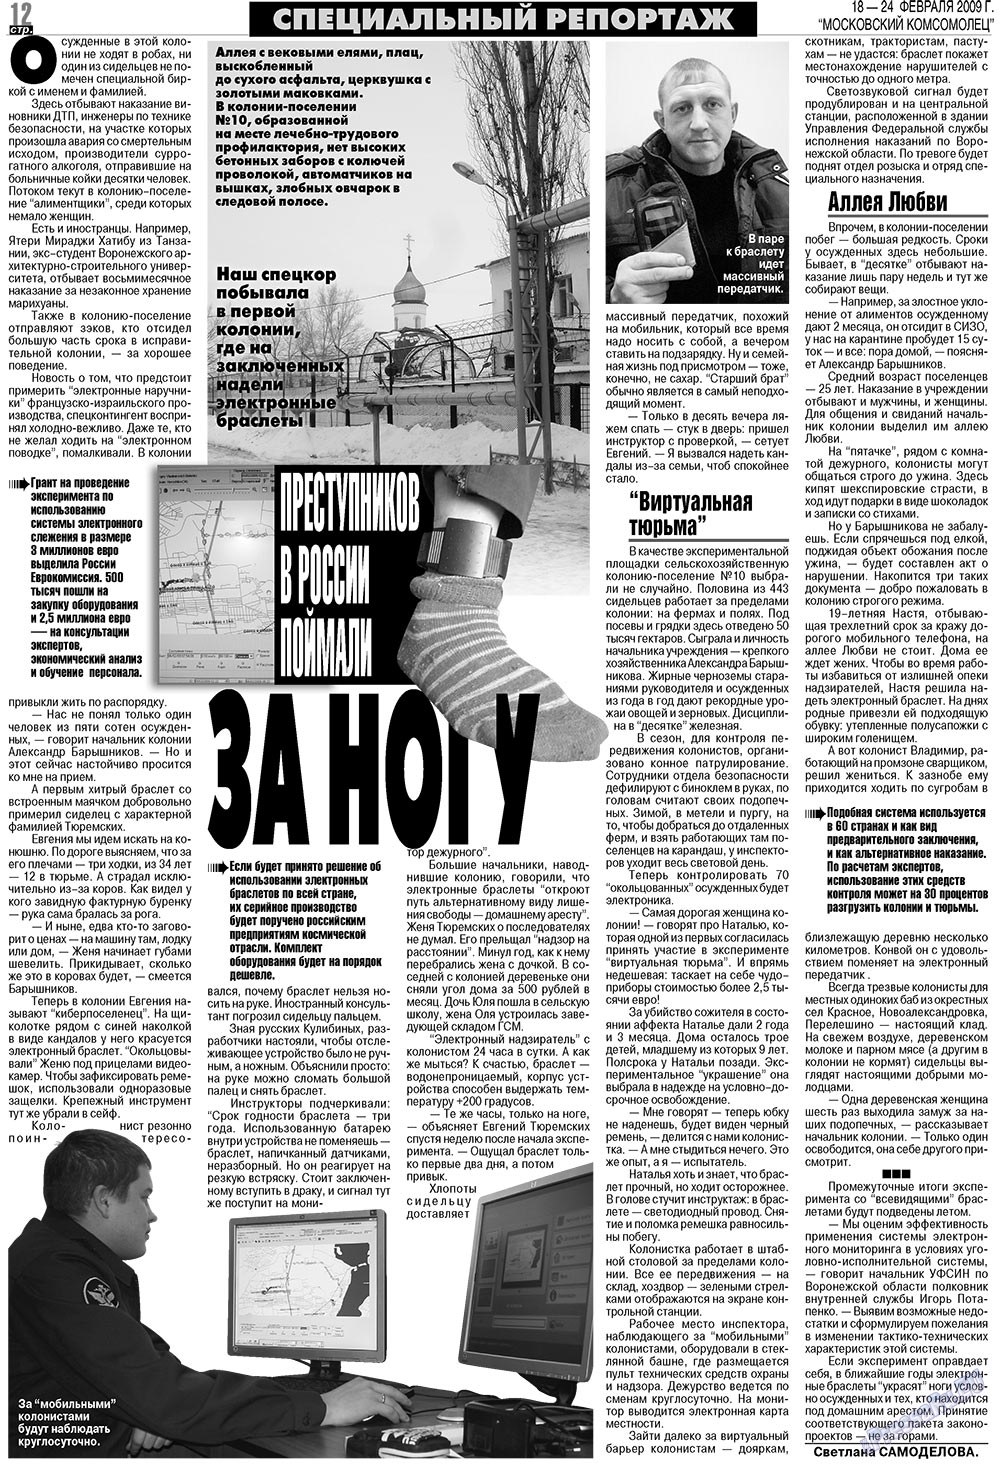 МК Испания, газета. 2009 №8 стр.12